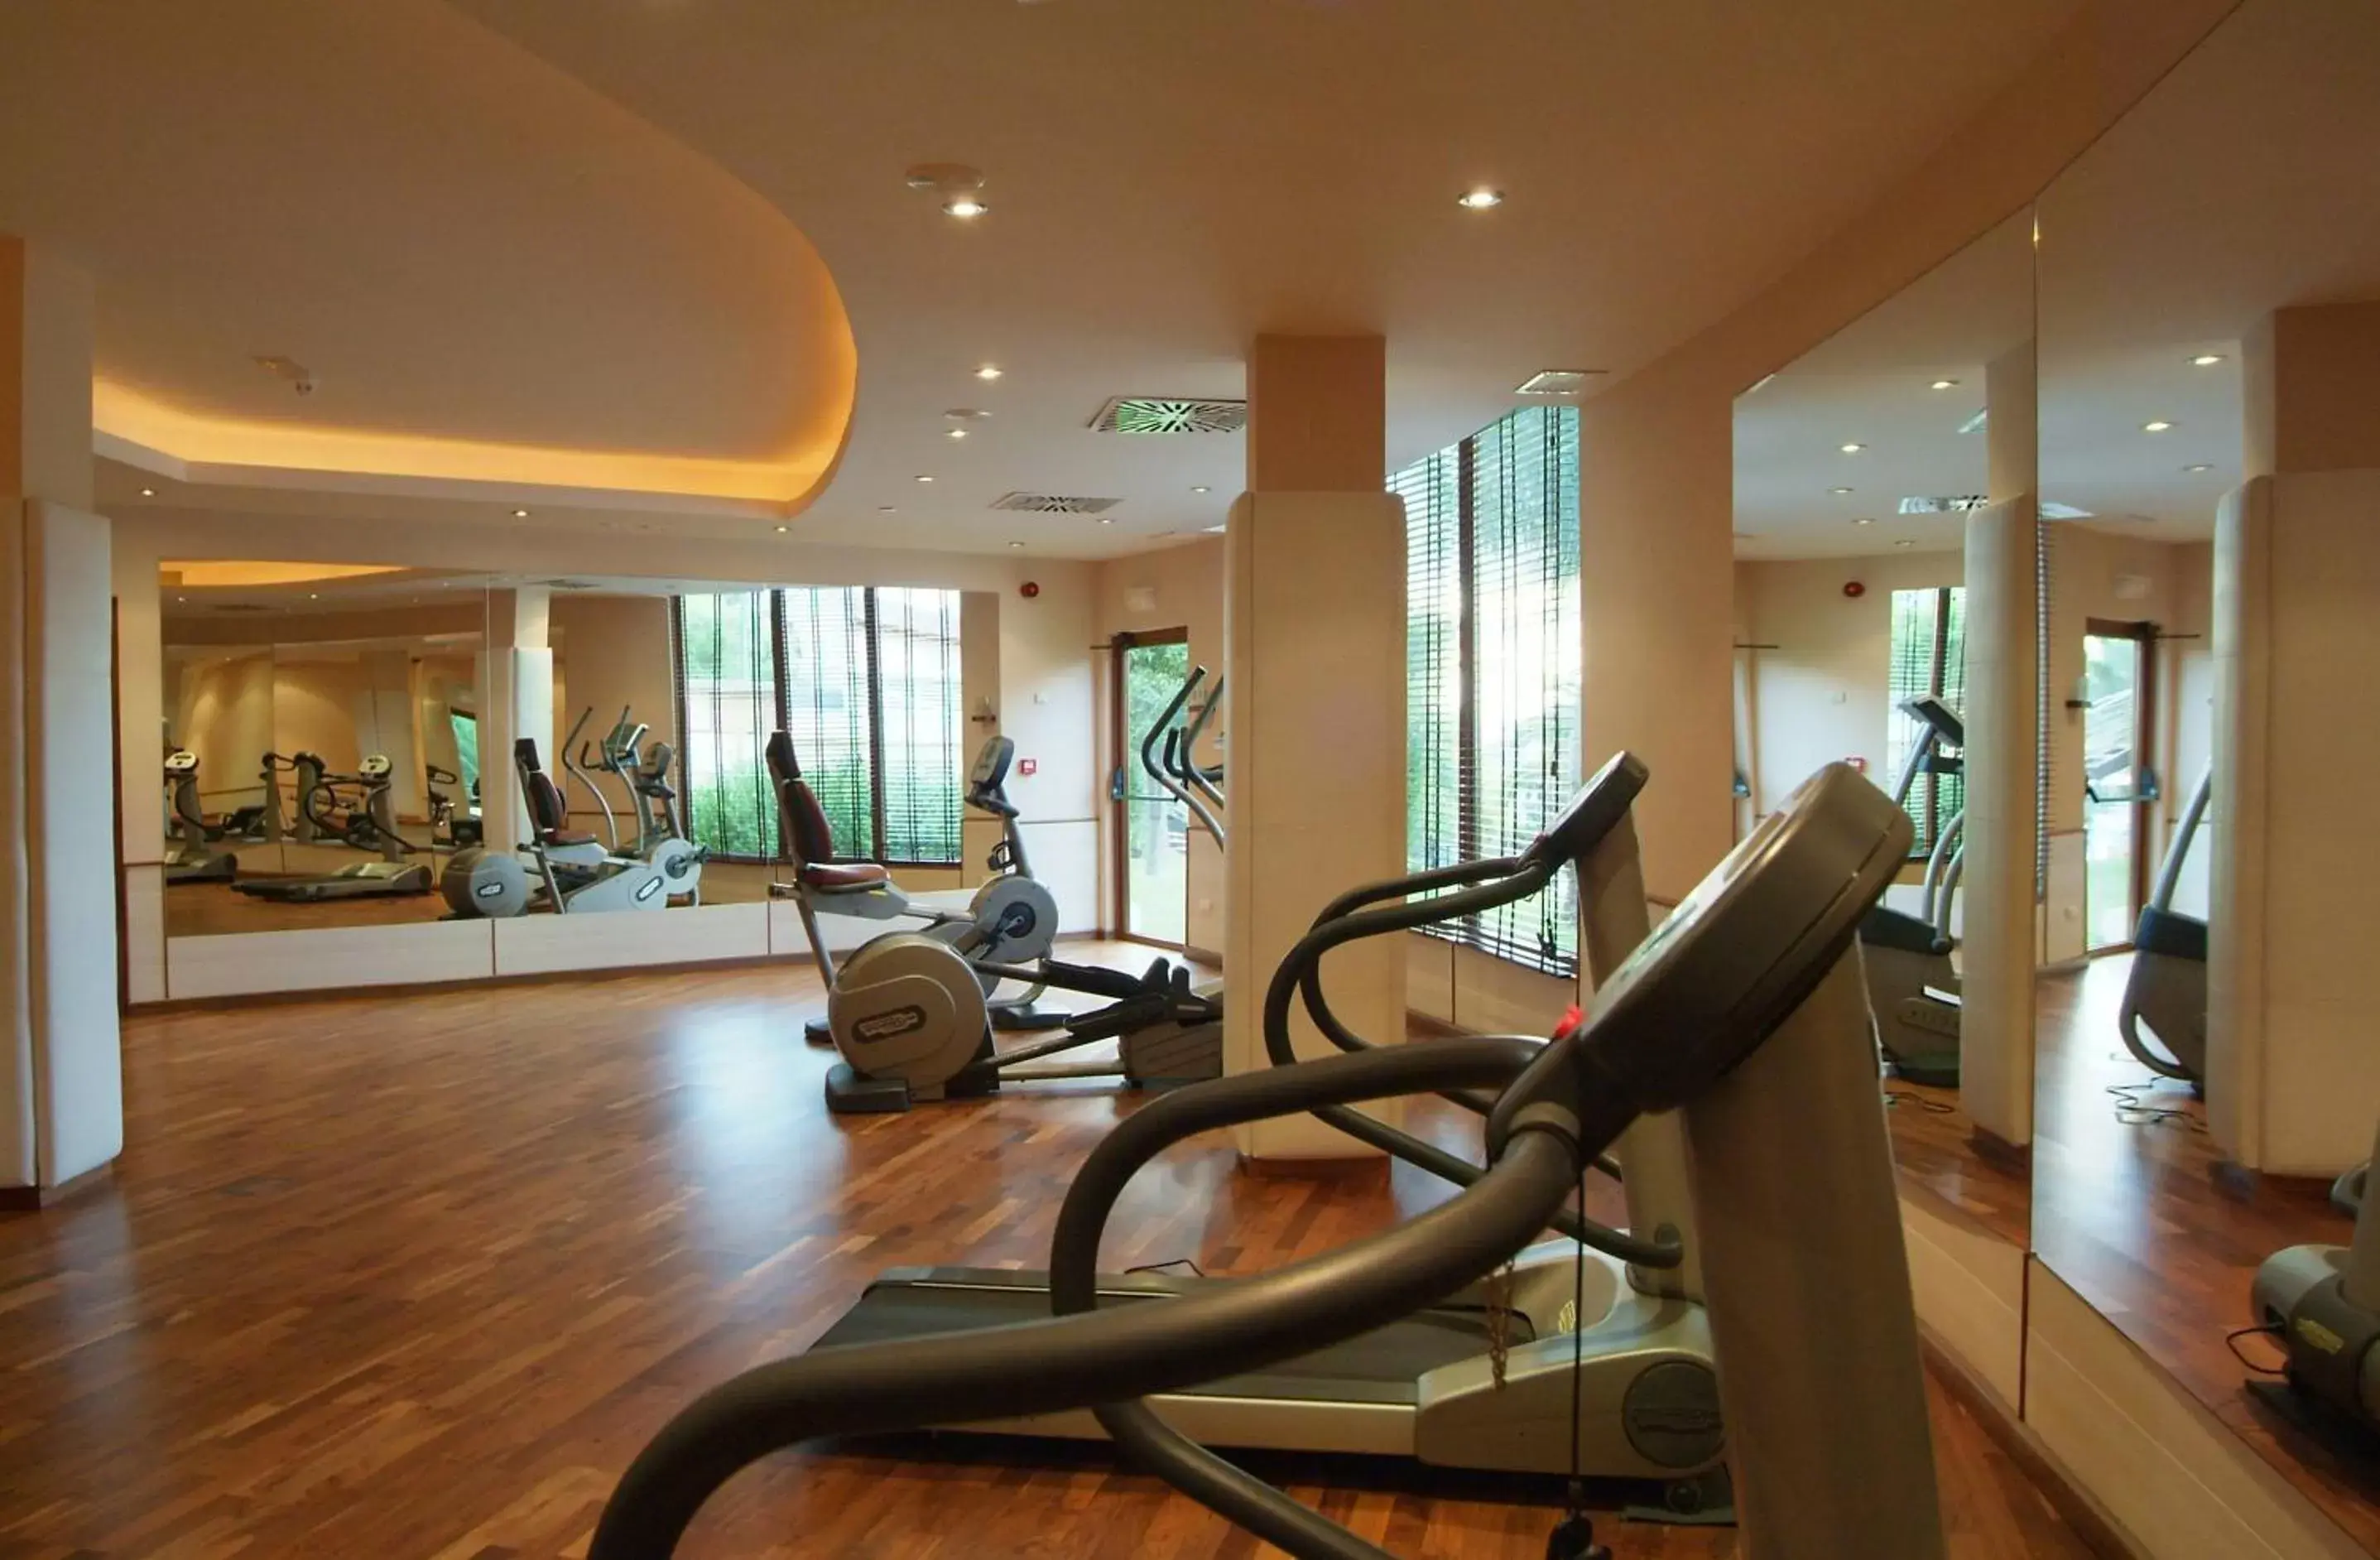 Fitness centre/facilities, Fitness Center/Facilities in GPRO Valparaiso Palace & Spa